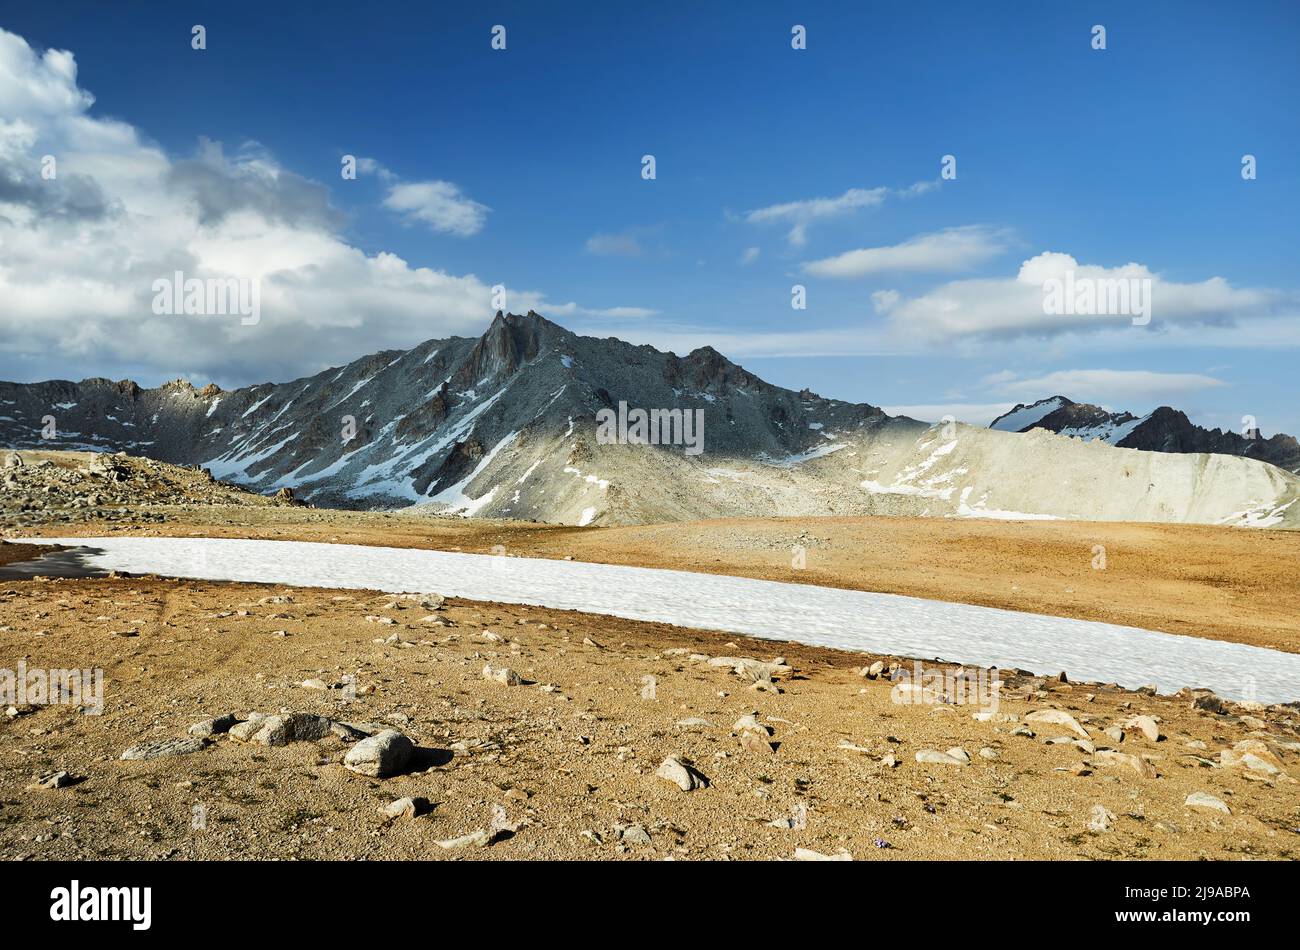 Splendido scenario del grande ghiacciaio ghiacciato e delle montagne innevate a Tien Shan, Kazakhstan. Foto Stock